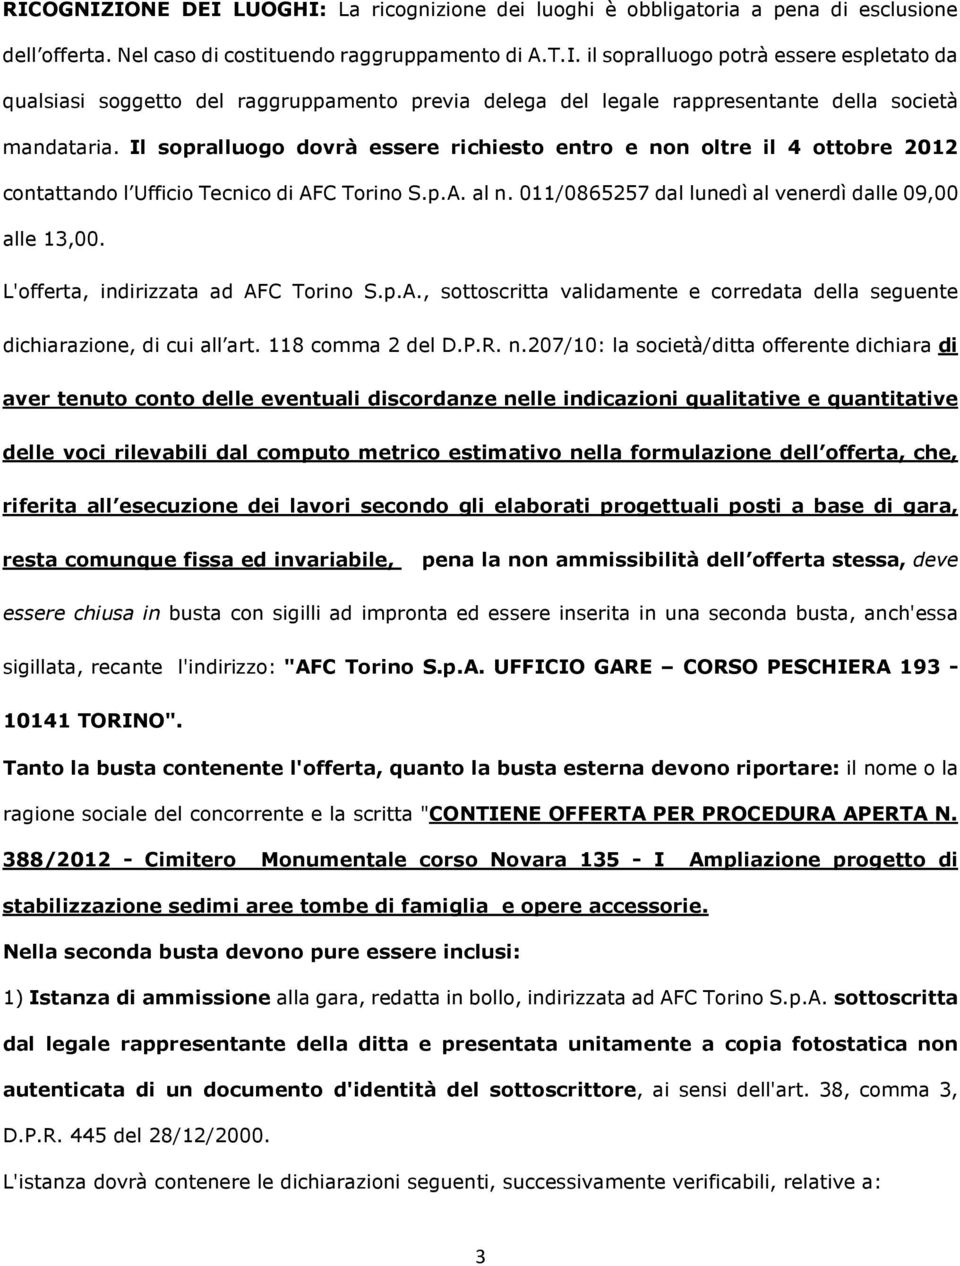 L'offerta, indirizzata ad AFC Torino S.p.A., sottoscritta validamente e corredata della seguente dichiarazione, di cui all art. 118 comma 2 del D.P.R. n.